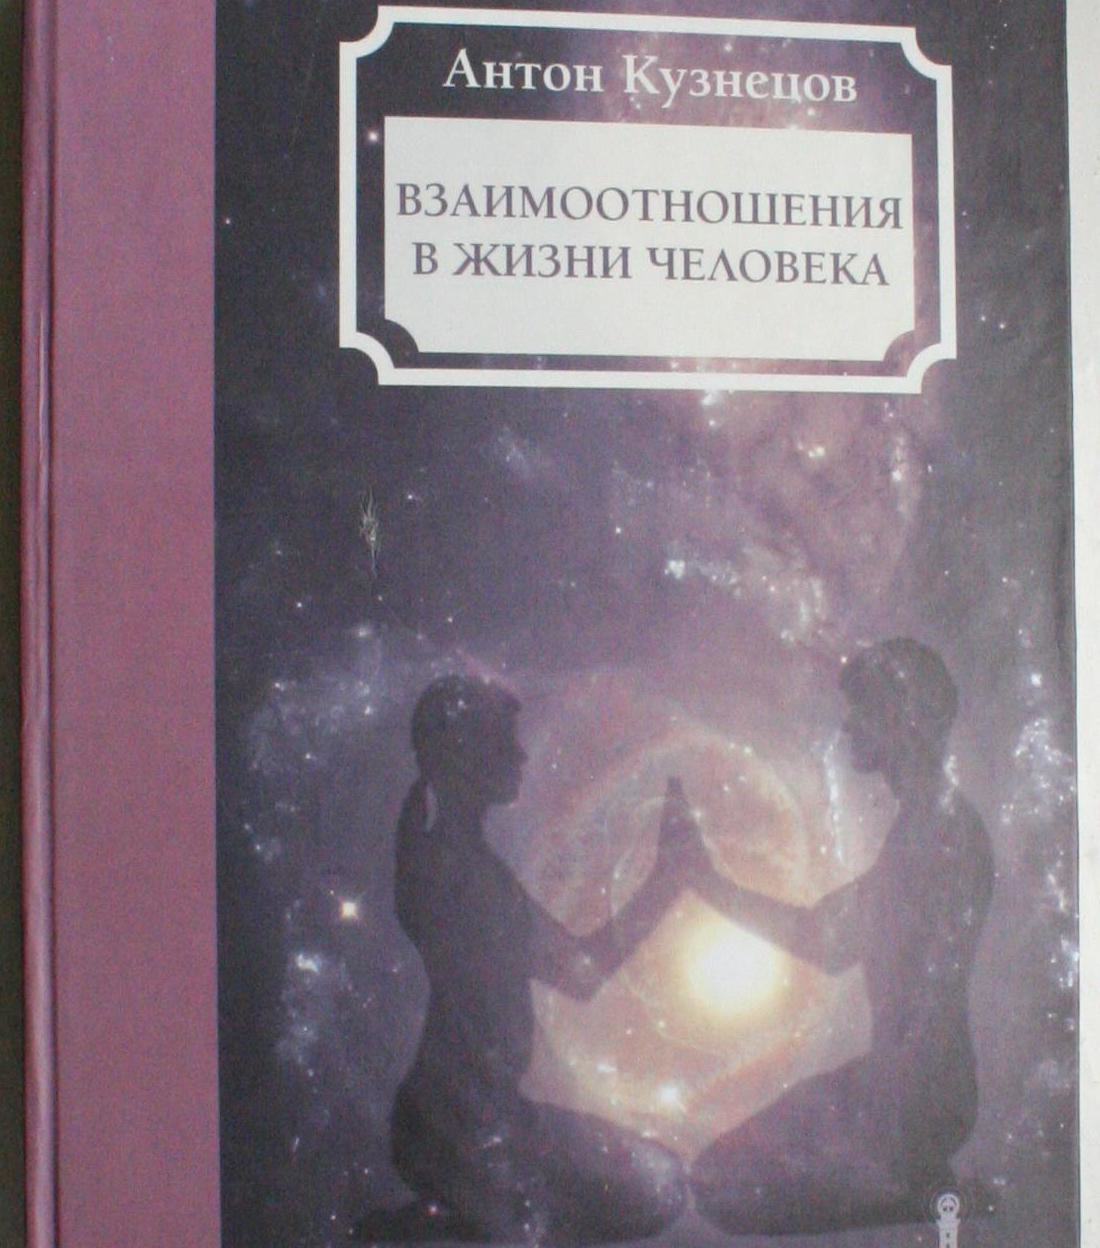 * Книга Антон Кузнецов — Взаимоотношения и жизнь человека v2 *